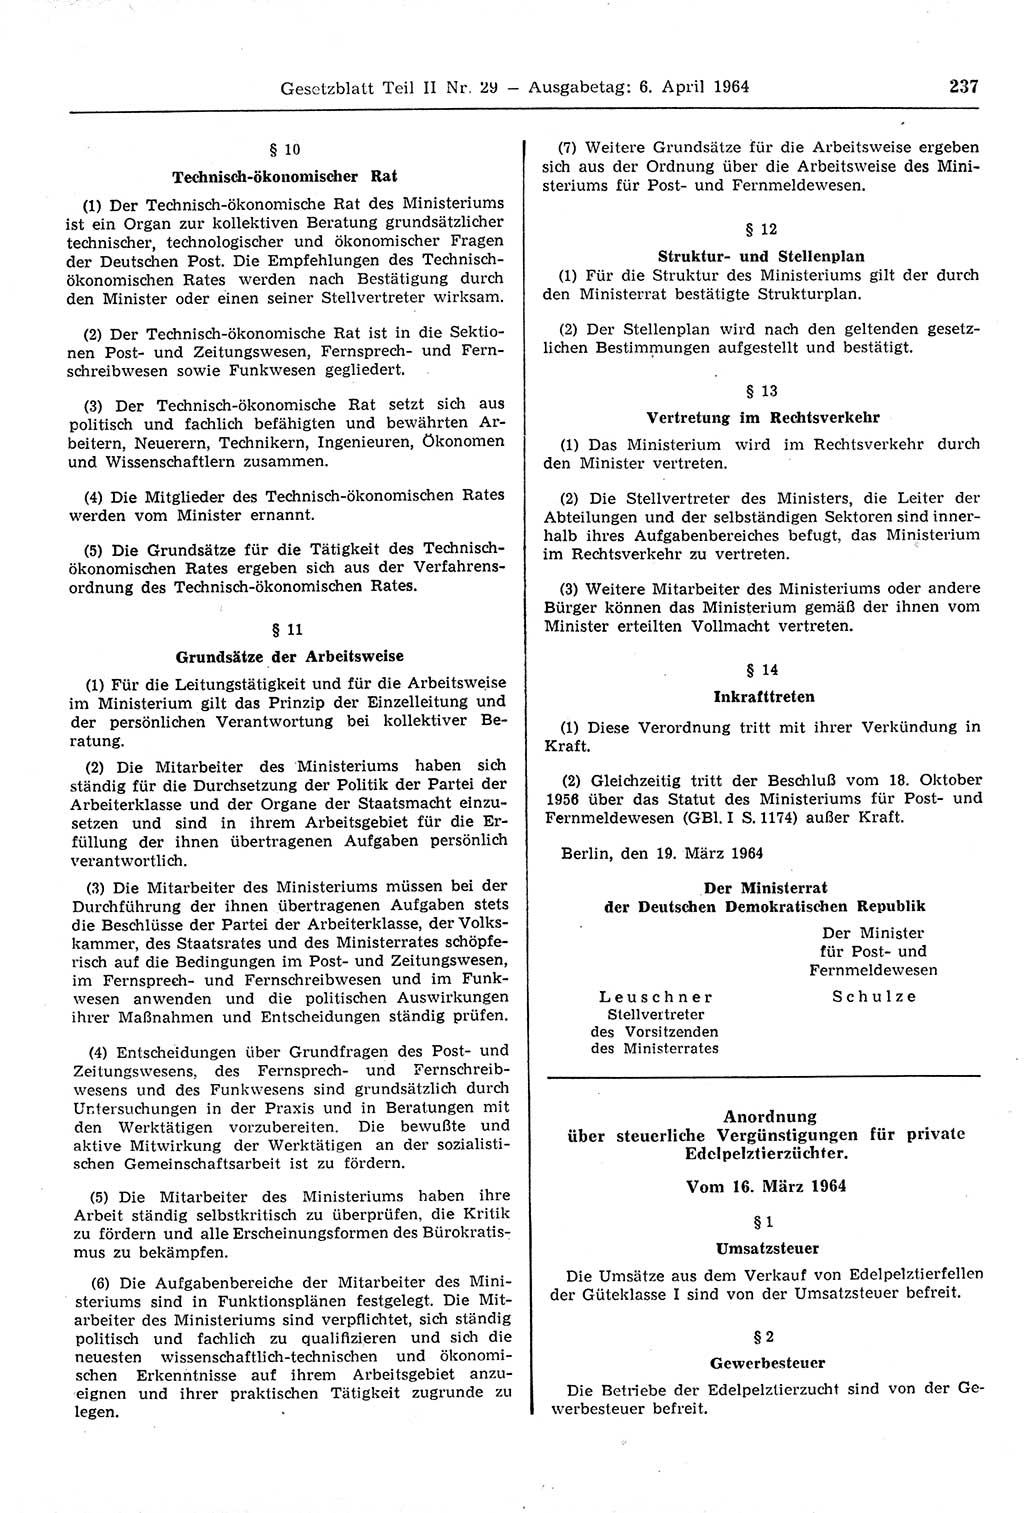 Gesetzblatt (GBl.) der Deutschen Demokratischen Republik (DDR) Teil ⅠⅠ 1964, Seite 237 (GBl. DDR ⅠⅠ 1964, S. 237)